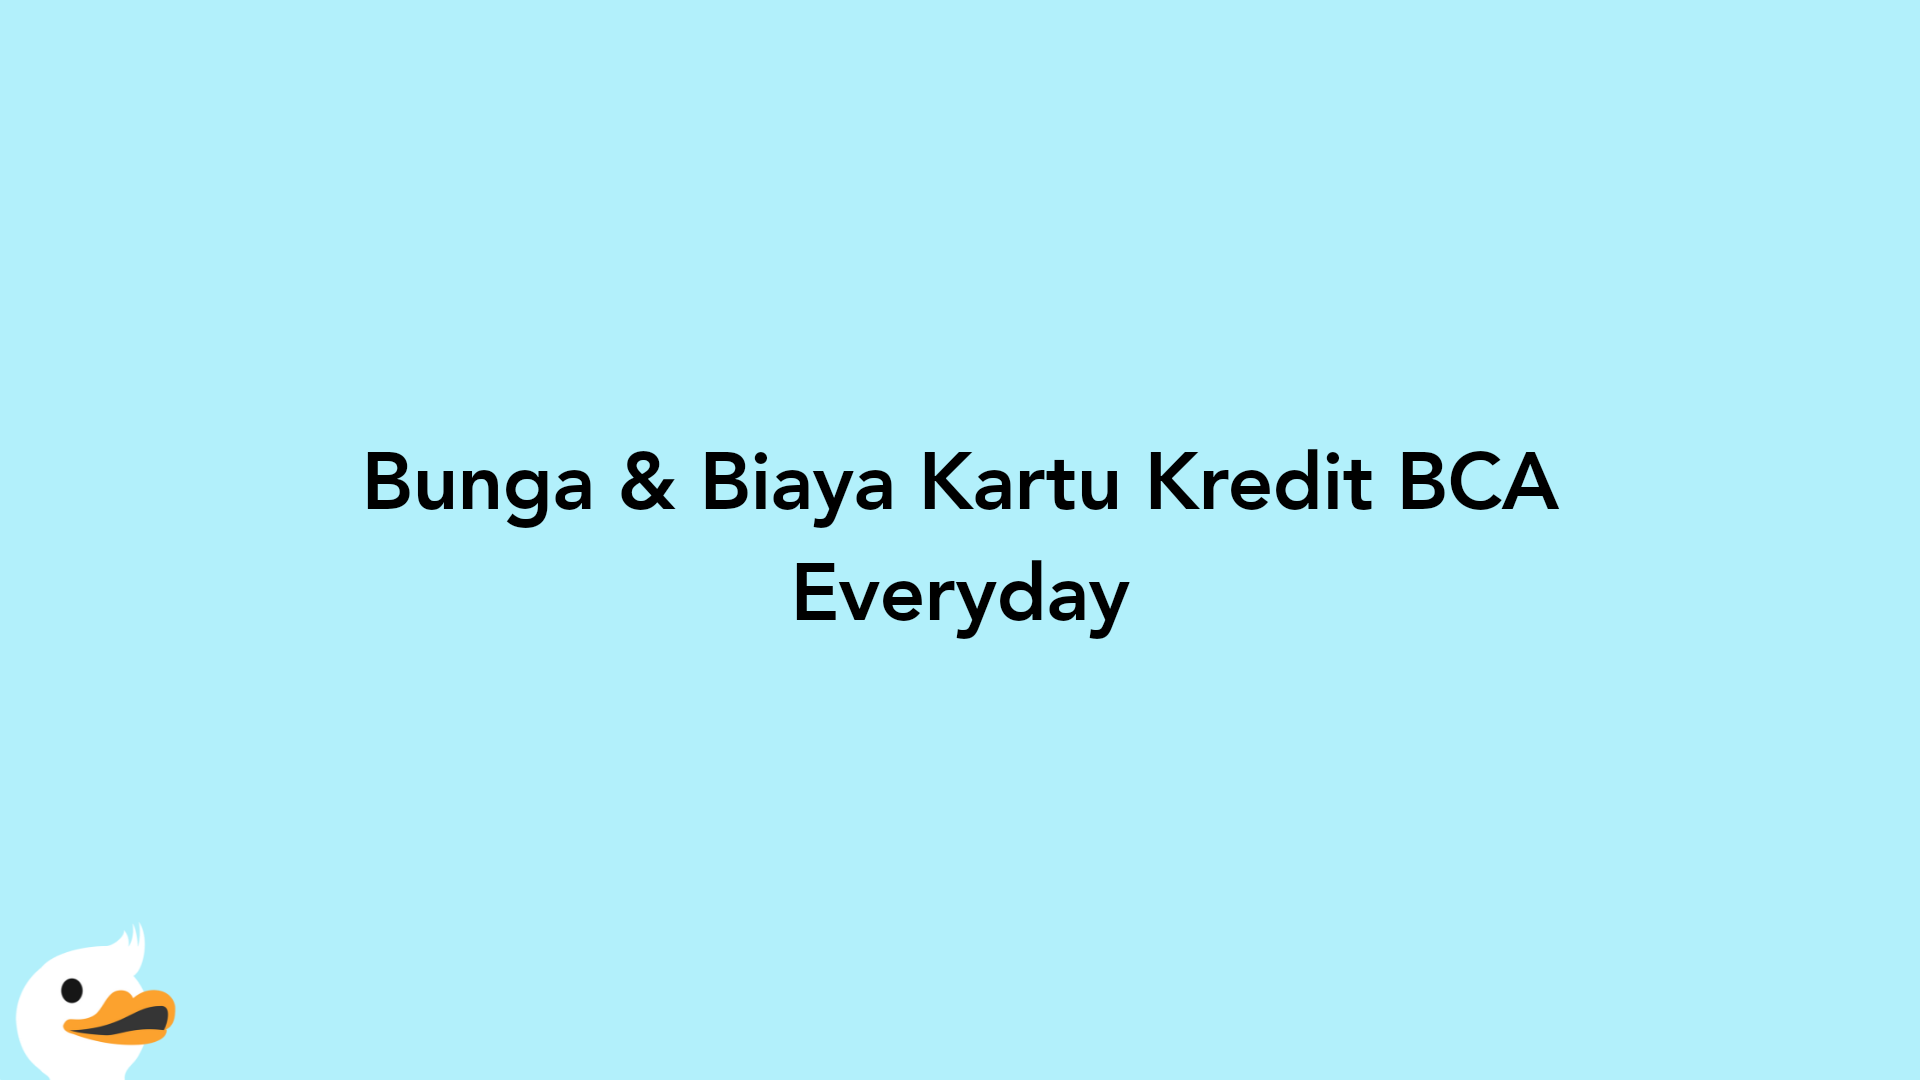 Bunga & Biaya Kartu Kredit BCA Everyday